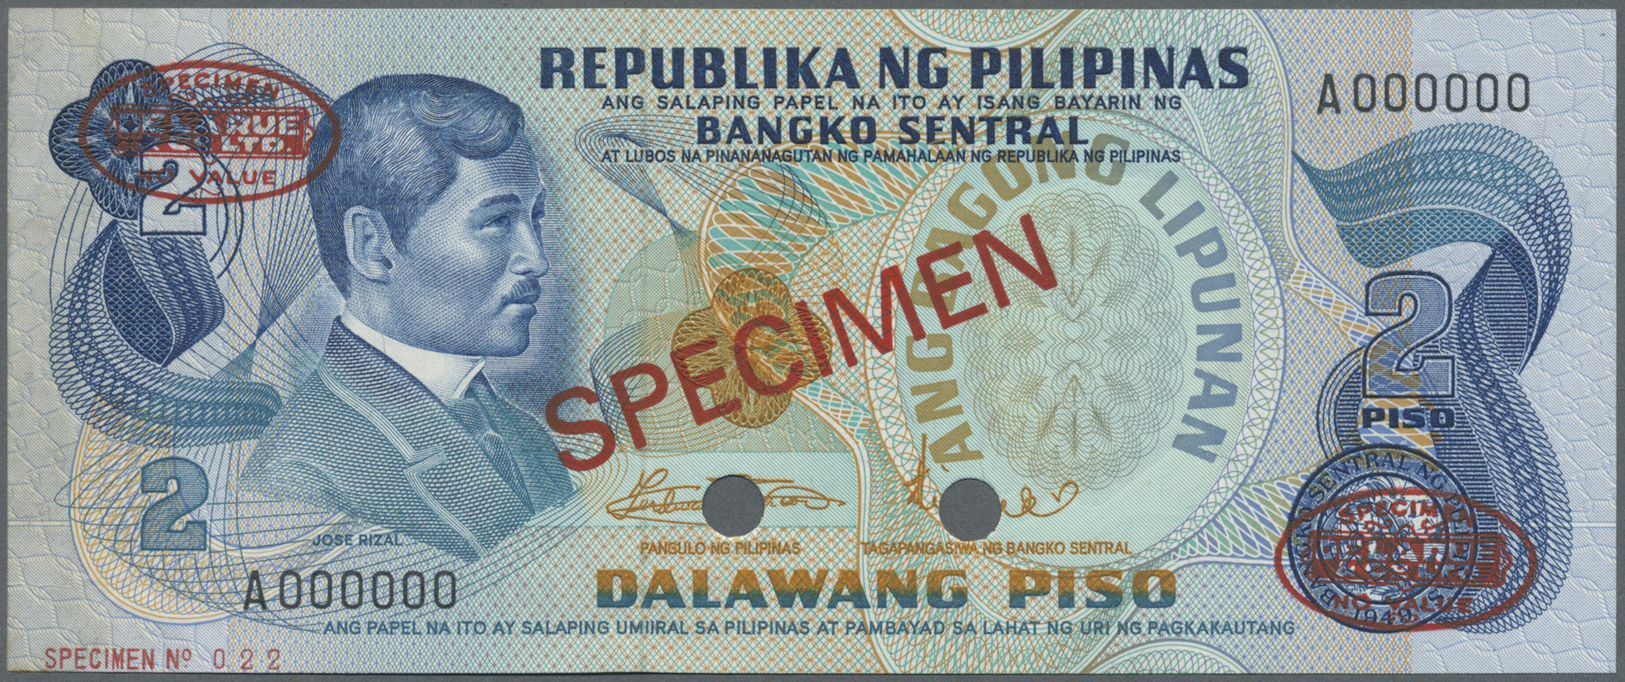 01973 Philippines / Philippinen: 2 Piso ND(1974-85) Specimen P. 152 In Condition: AUNC. - Philippines